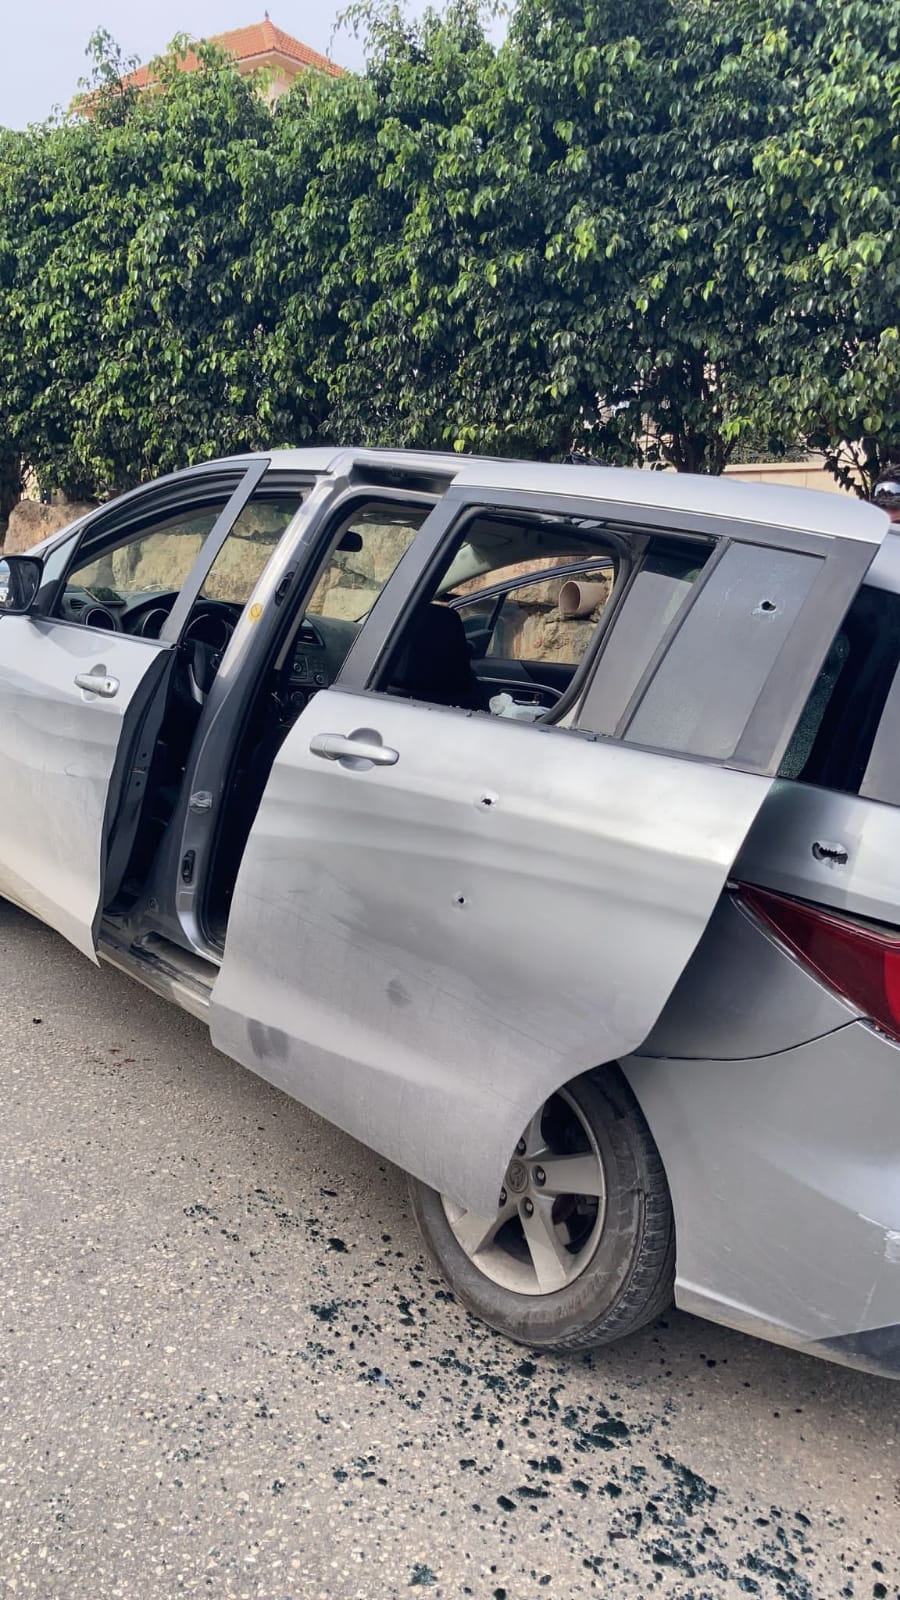 אירוע דריסה באום אל פאחם: שני לוחמי מג"ב נפצעו בינוני